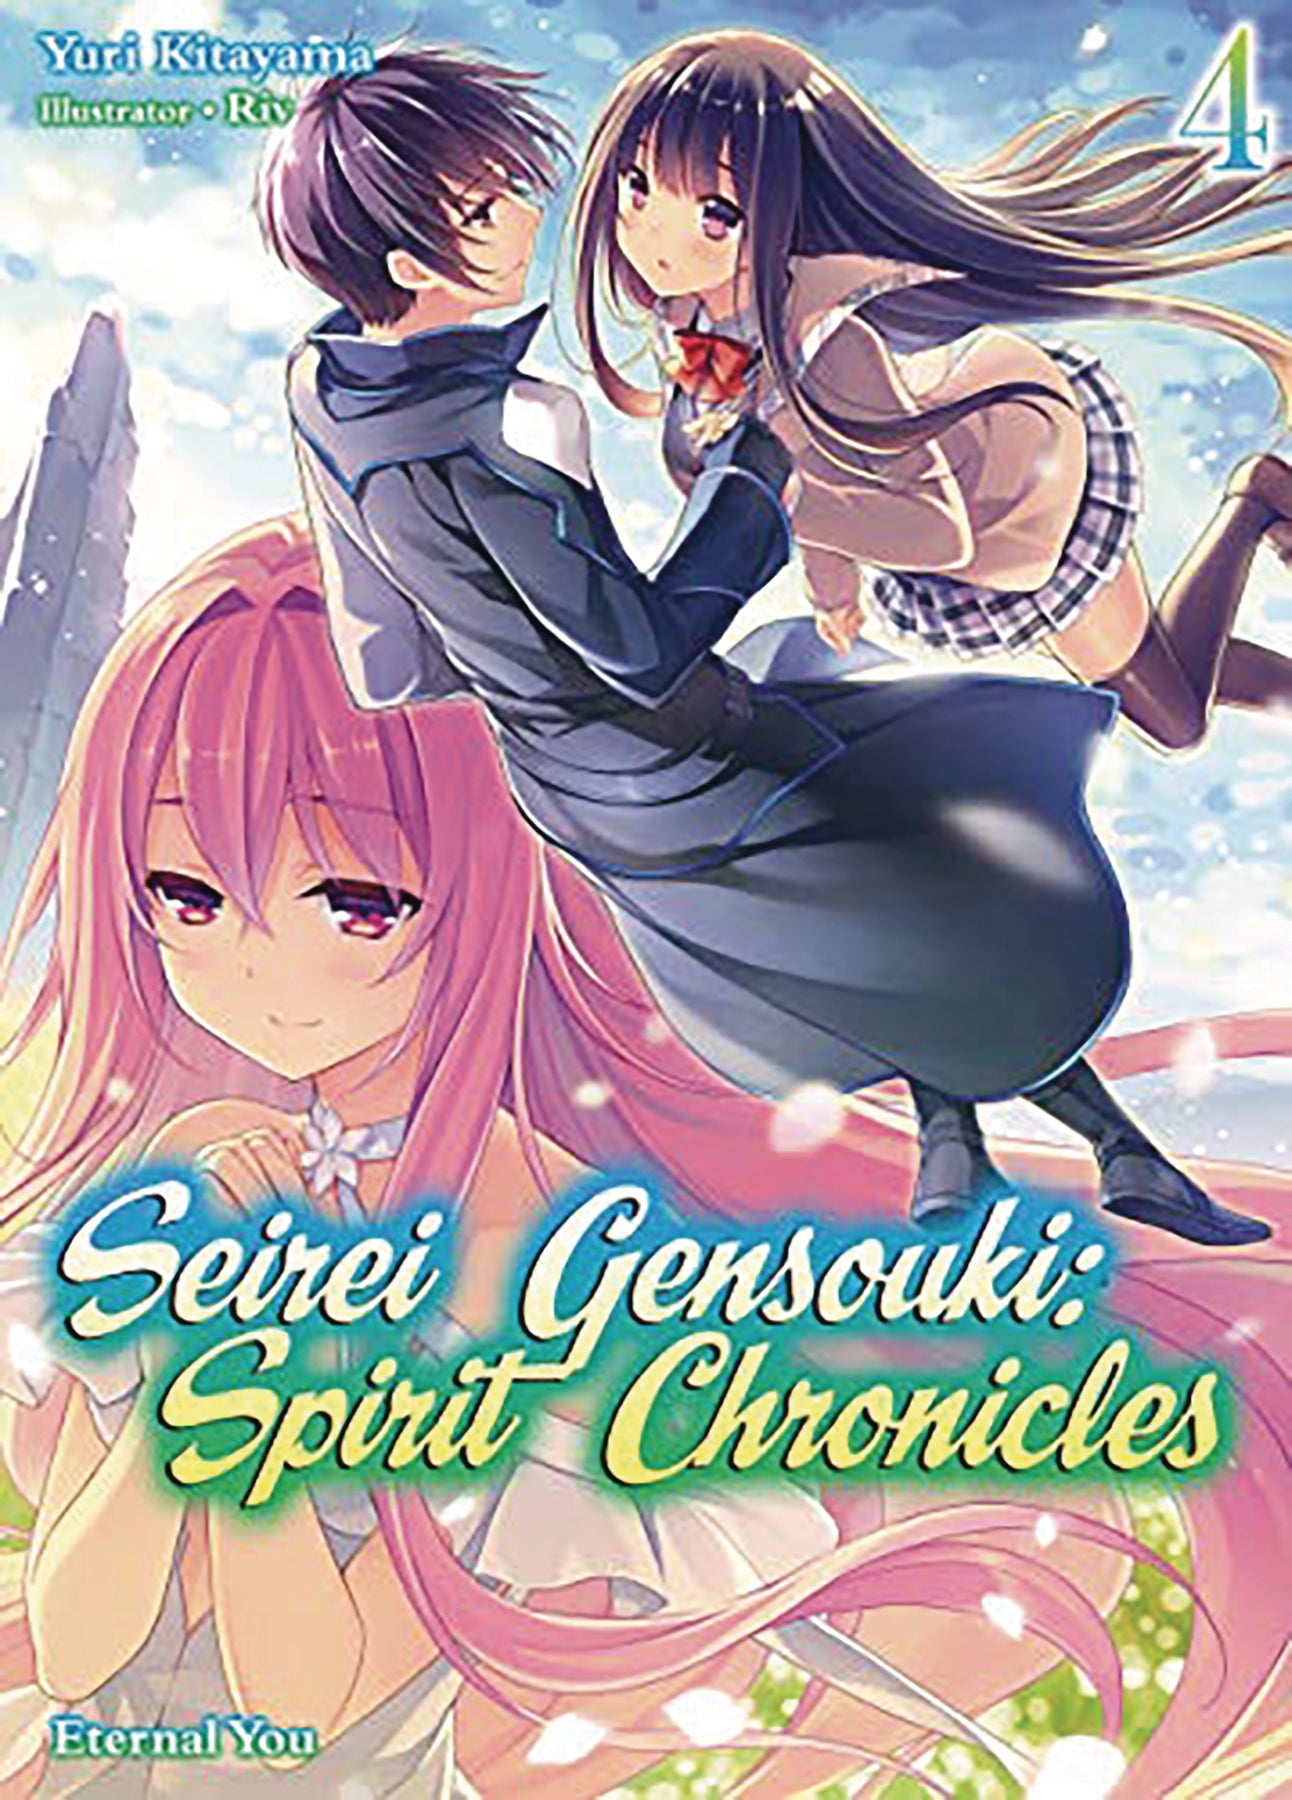 Seirei Gensouki: Spirit Chronicles #1 - Volume 1 (Issue)